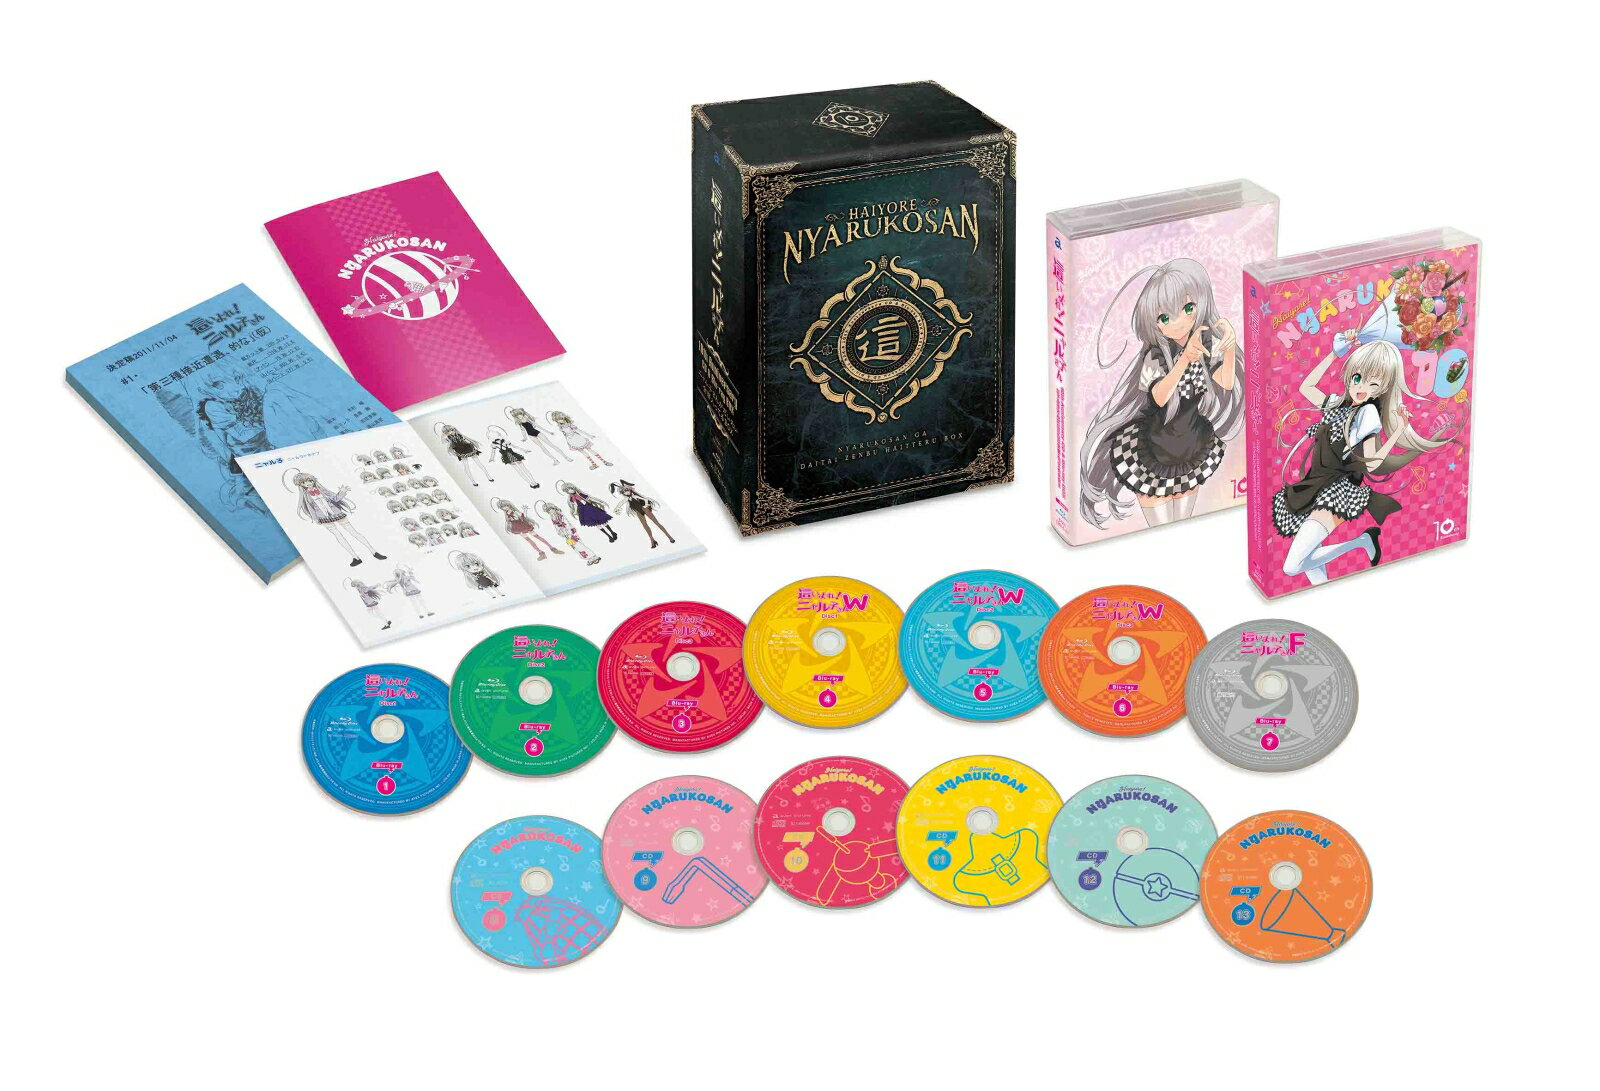 這いよれ！ニャル子さん10th Anniversary CD＆Blu-ray BOX「ニャル子さんがだいたい全部入ってるBOX 」【Blu-ray】 阿澄佳奈